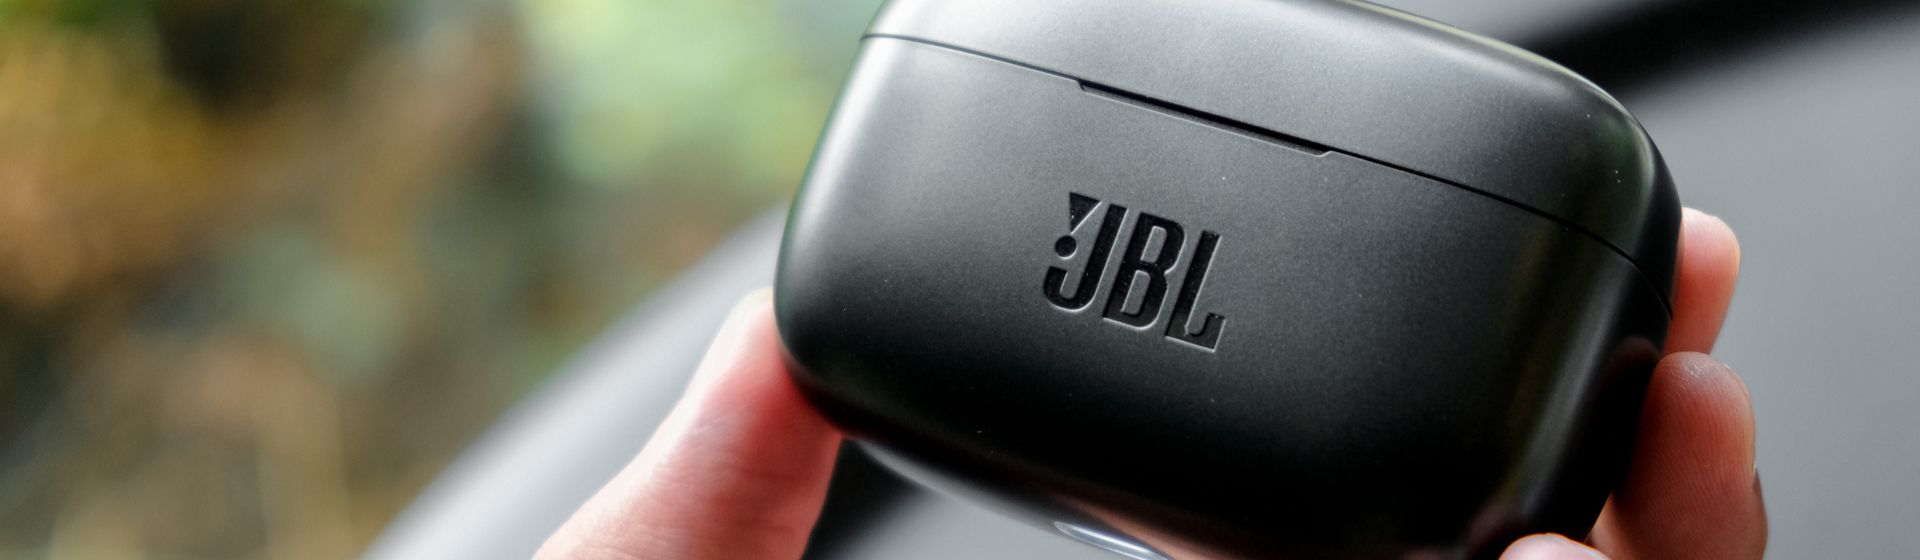 Fone JBL: veja as melhores opções para comprar em 2021